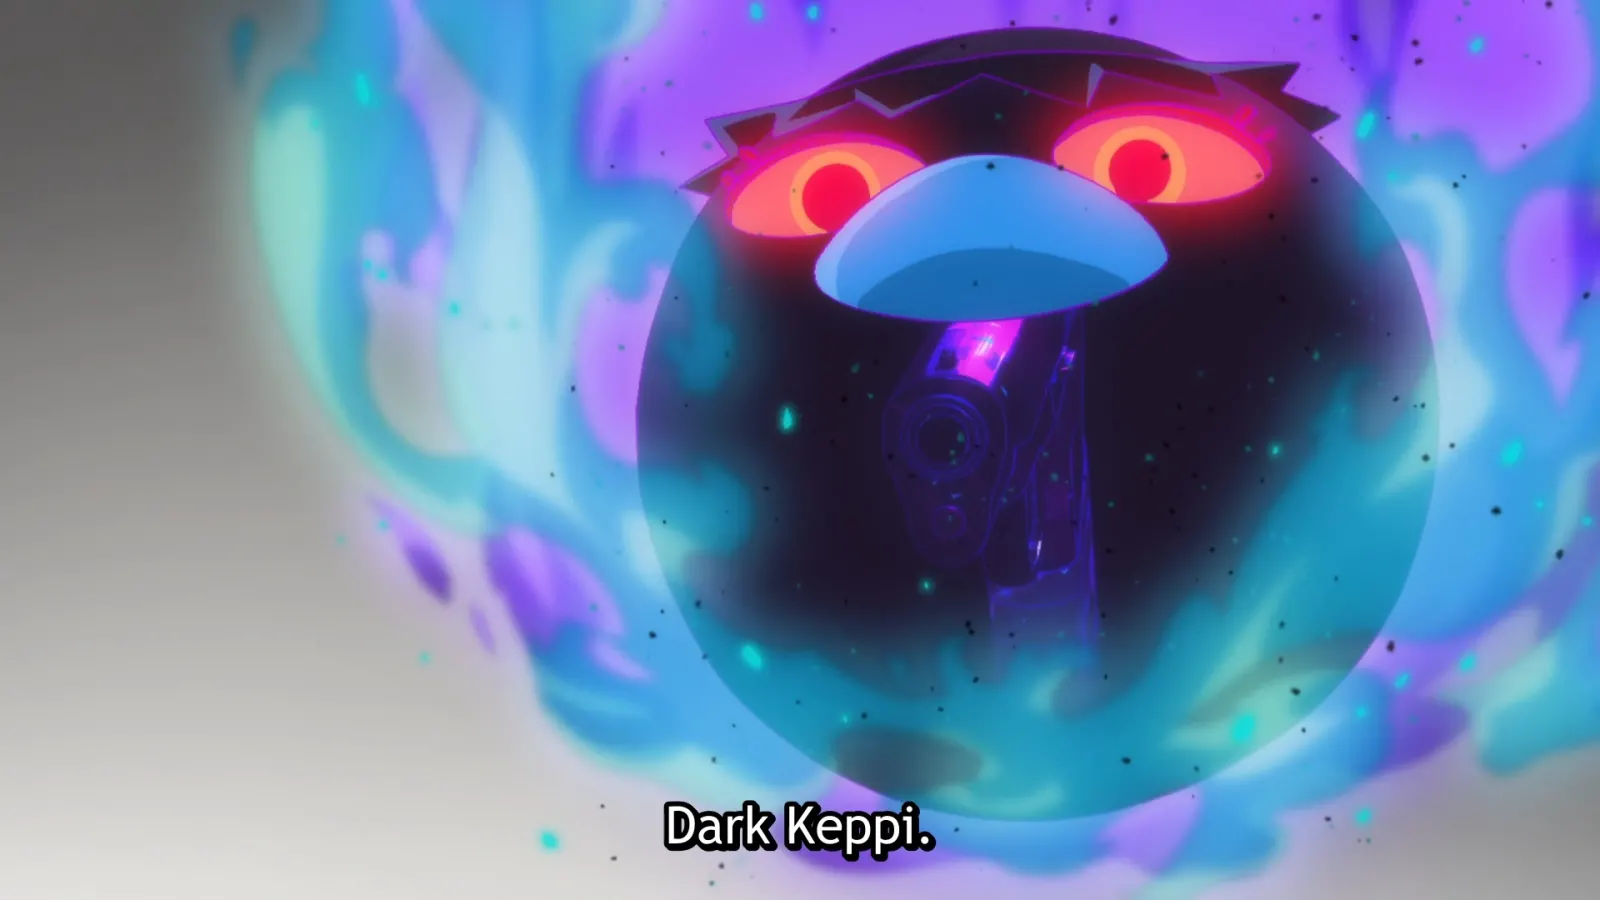 Dark Keppi - his eyes are only marginally more sinister than Light Keppi’s